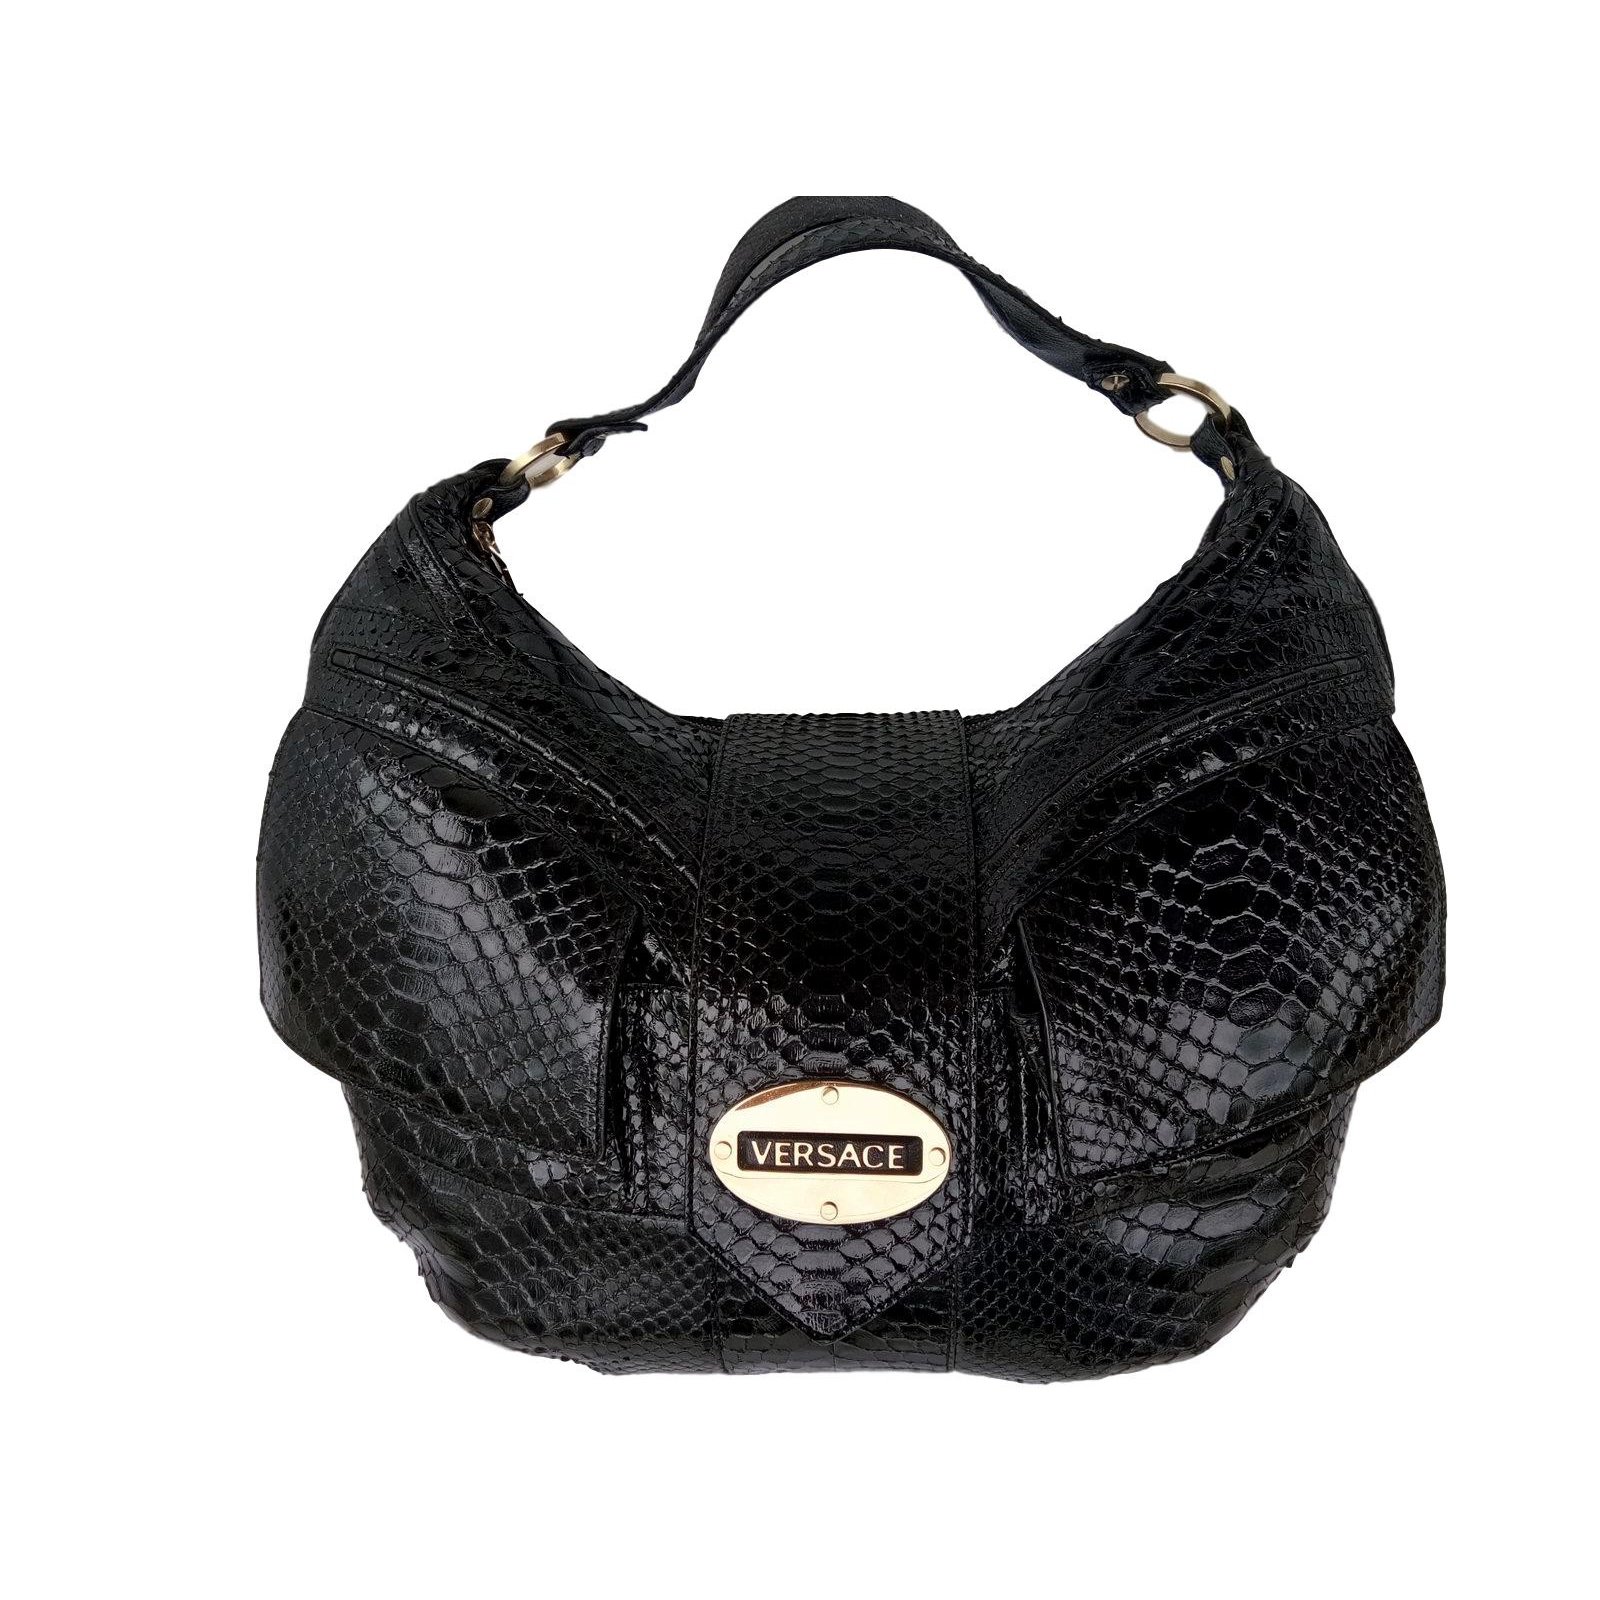 Gianni Versace - Authenticated Handbag - Cotton Black Plain for Women, Good Condition